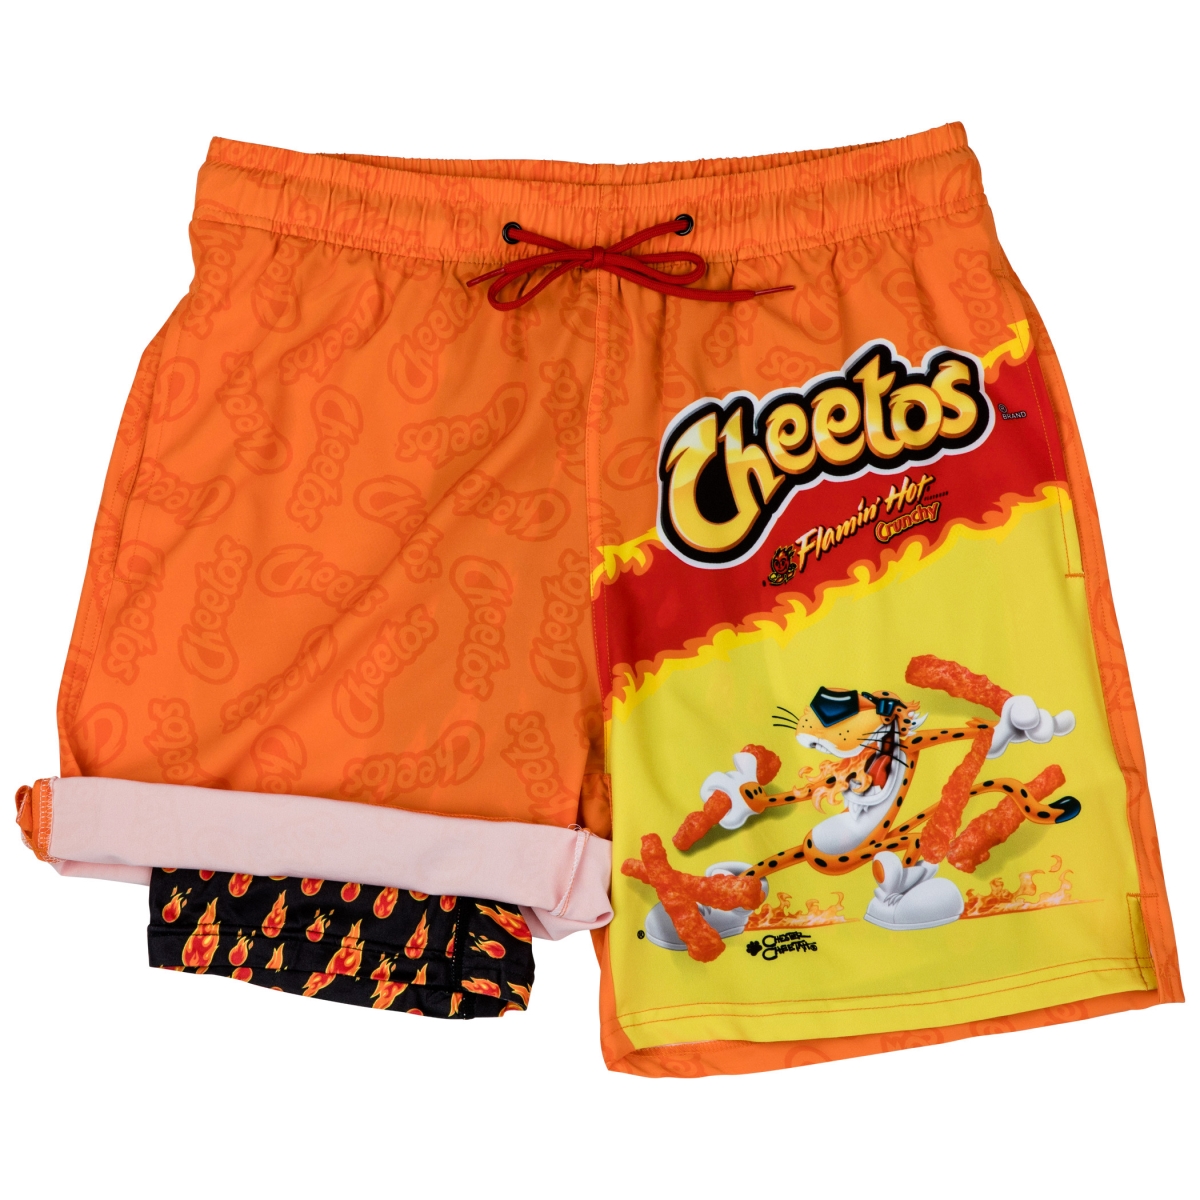 866842-medium-32 Flaming Hot Cheetos Bag 6 in. Inseam Lined Swim Trunks, Orange - Medium - 32-34 -  Pop Culture, 866842-medium(32